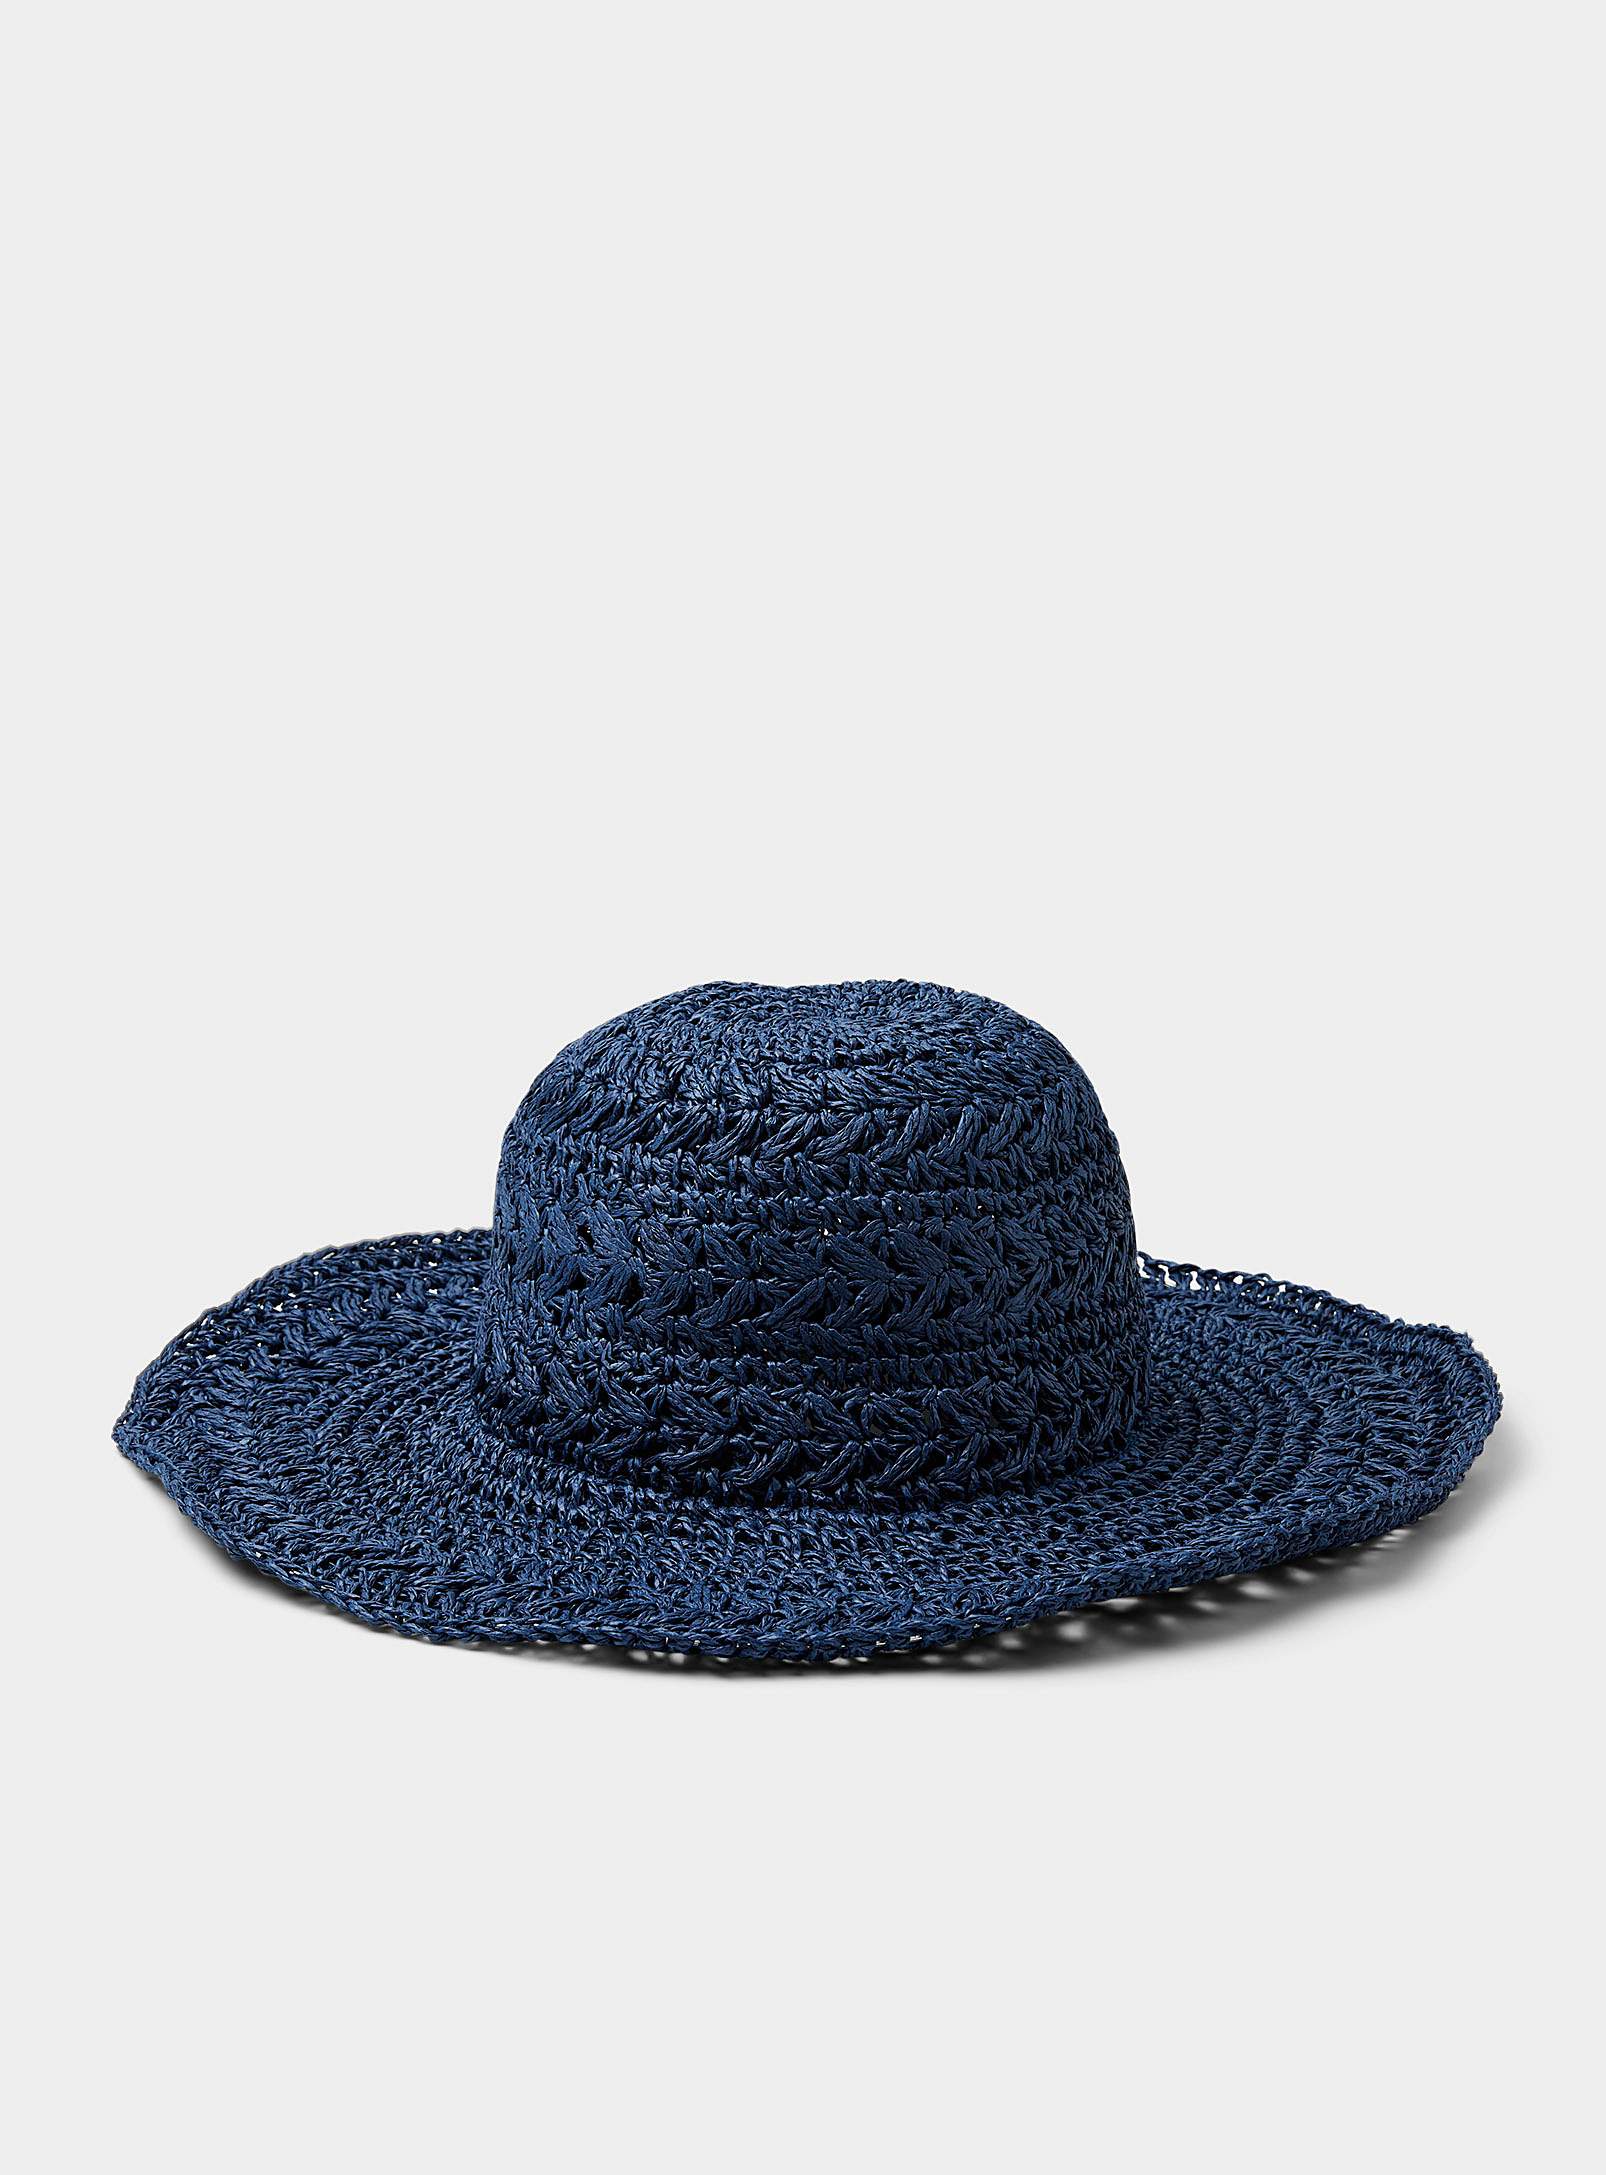 ICHI - Women's Navy straw wide-brimmed hat